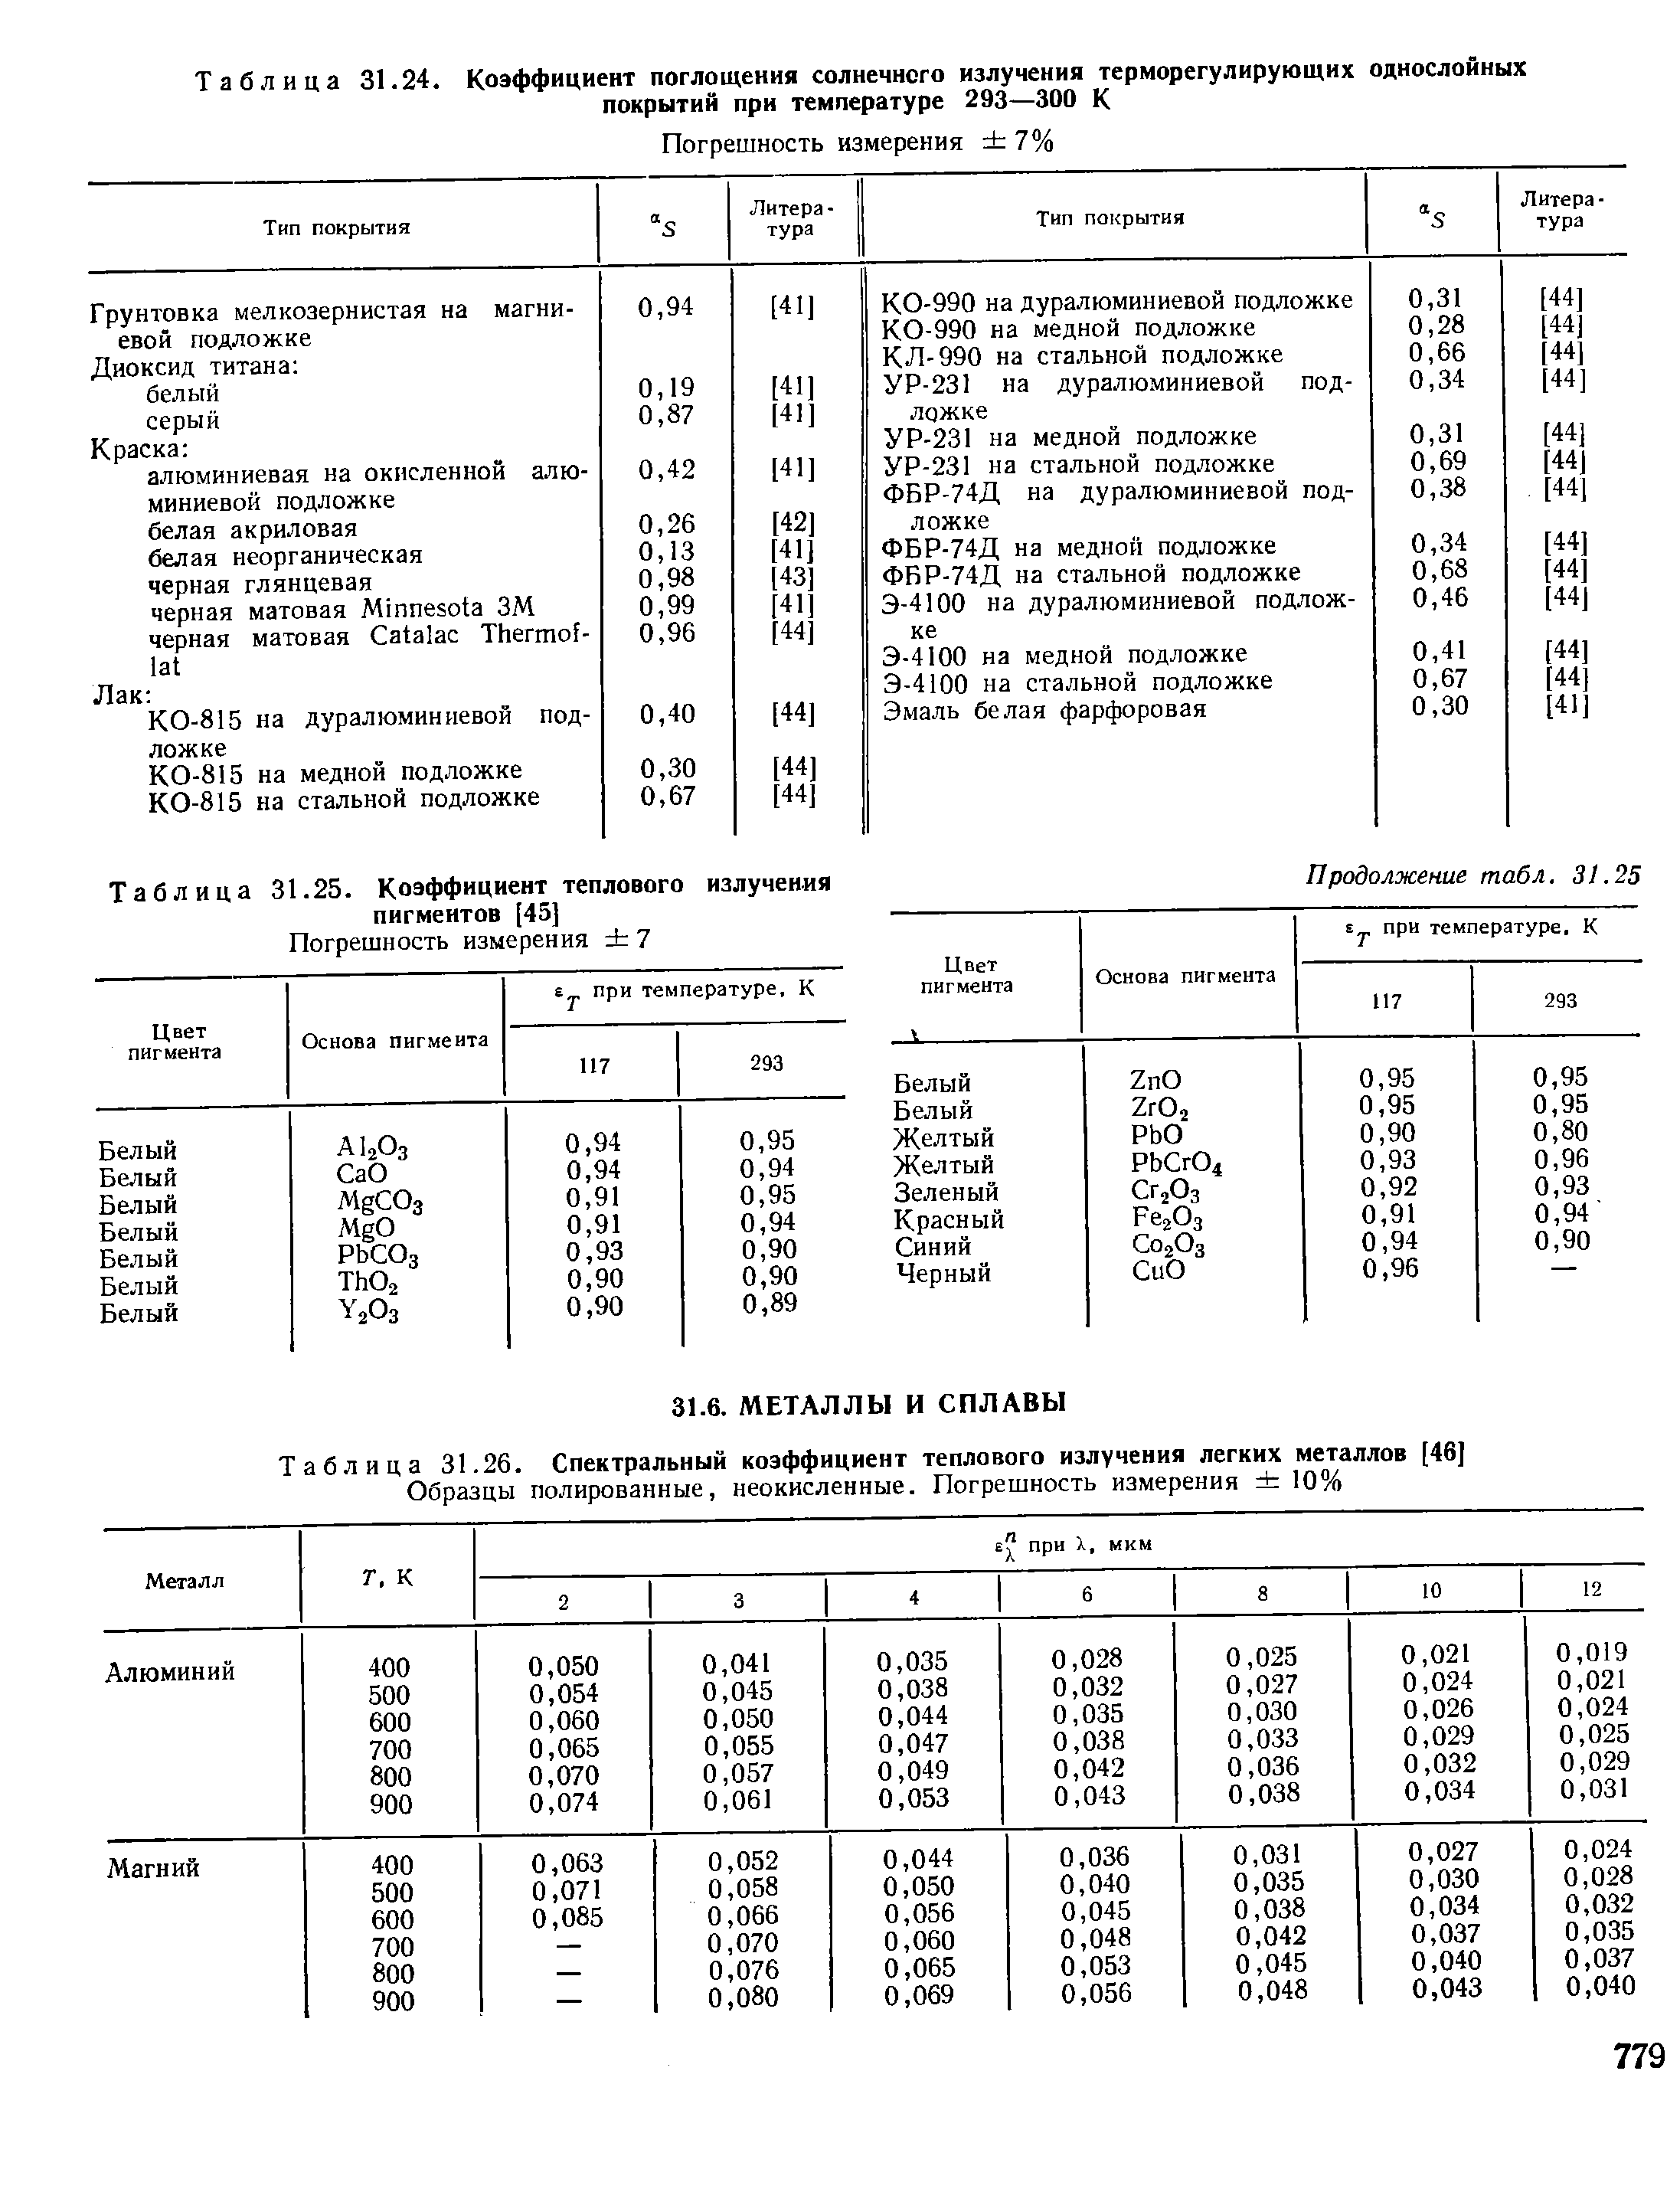 Таблица 31.26. Спектральный коэффициент теплового излучения легких металлов [46]
